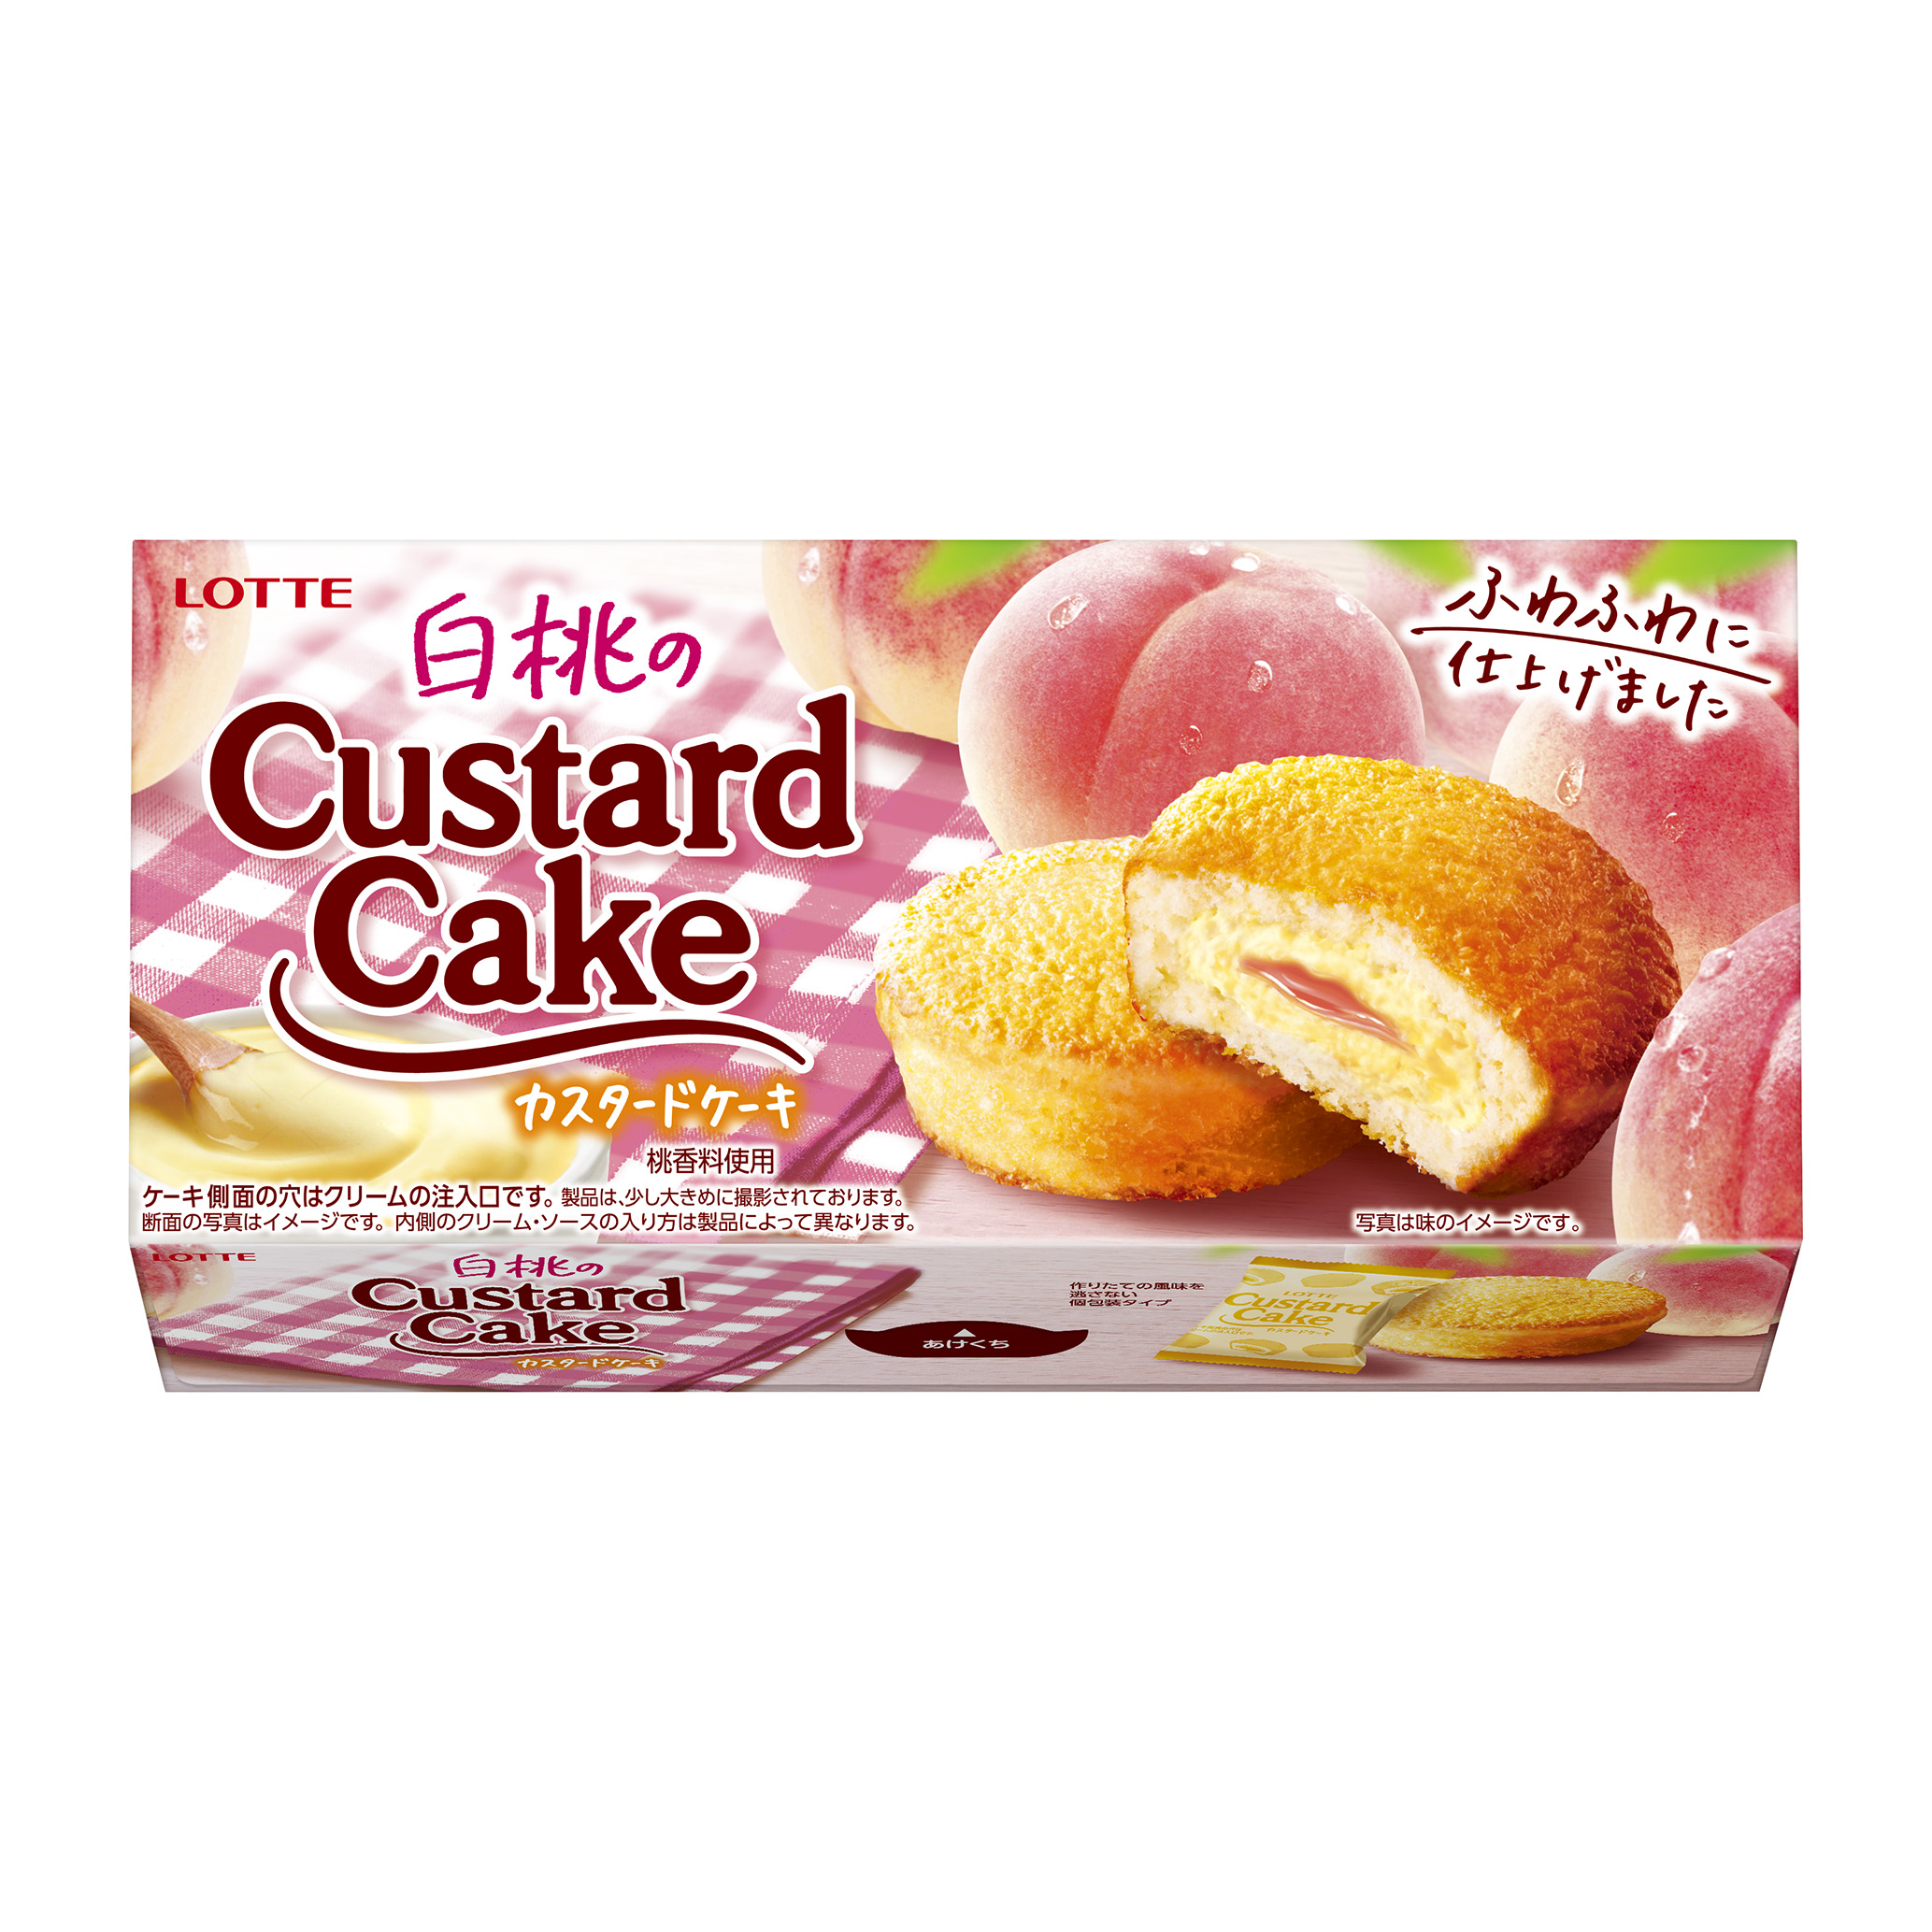 カスタードケーキ は発売35周年 毎年好評の桃のカスタードケーキが今年も登場 カスタードクリームと白桃ソースを組み合わせた 白桃のカスタードケーキ を発売いたします 株式会社ロッテのプレスリリース